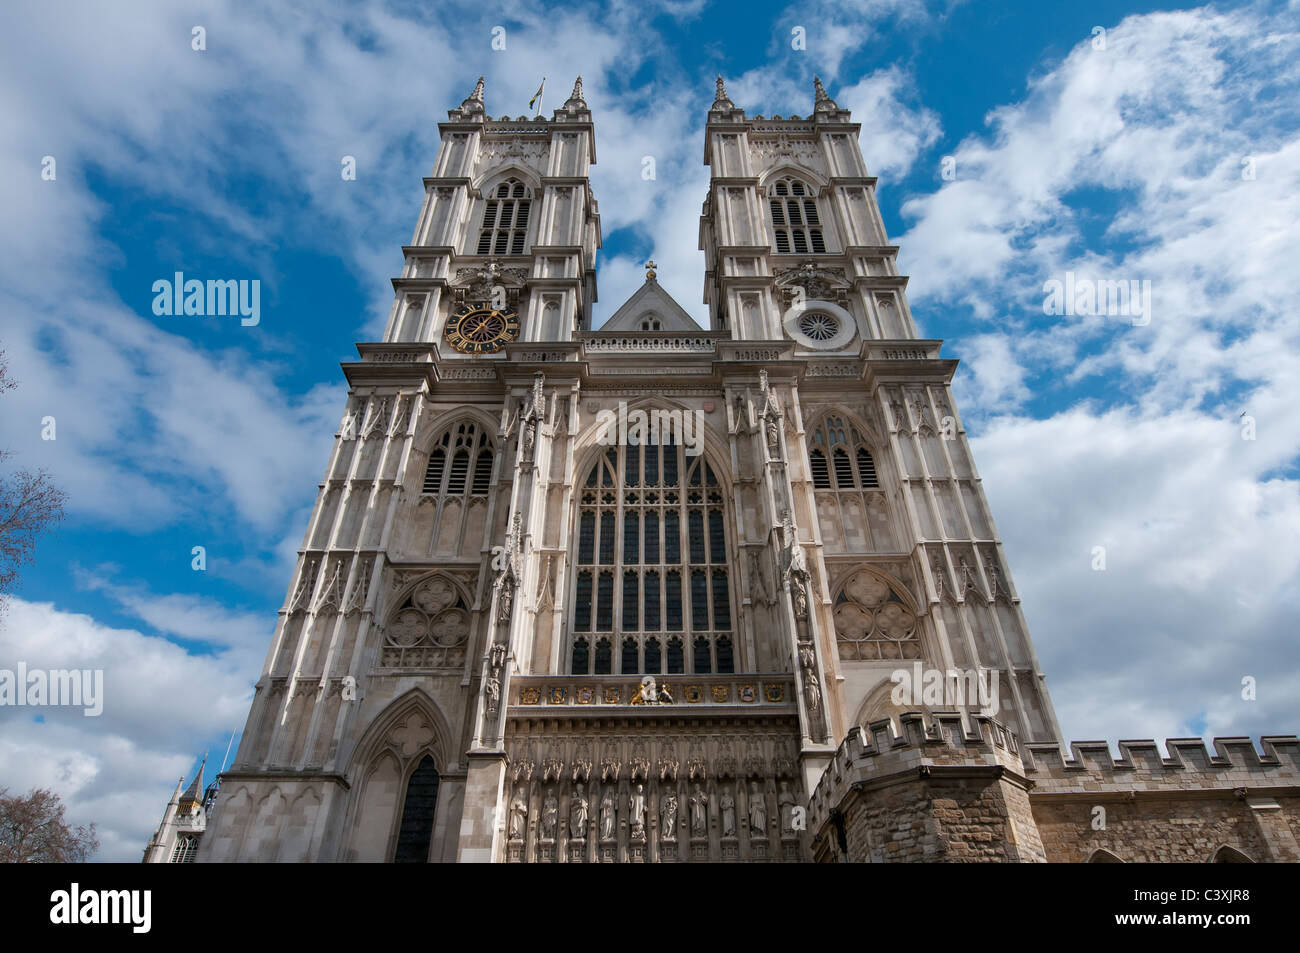 Londra Inghilterra Regno Unito Europa urbano della città antico edificio storico storia dell'architettura famosa abbazia di Westminster chiesa cattedrale il culto Foto Stock